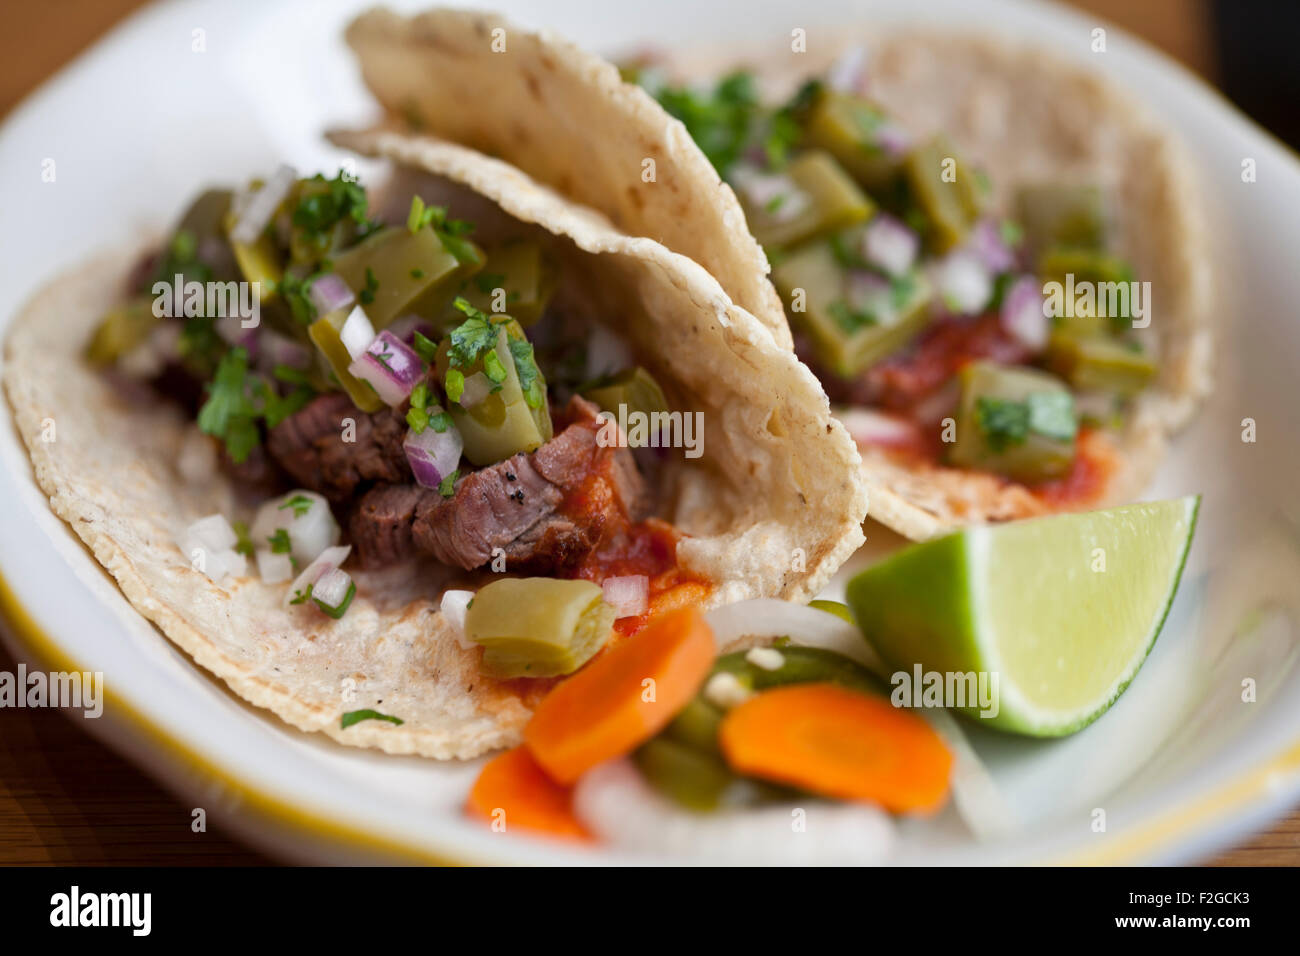 Dos tacos de carne asada con nopales, y salsa de chipotle en una placa blanca con cal y verduras encurtidas Foto de stock